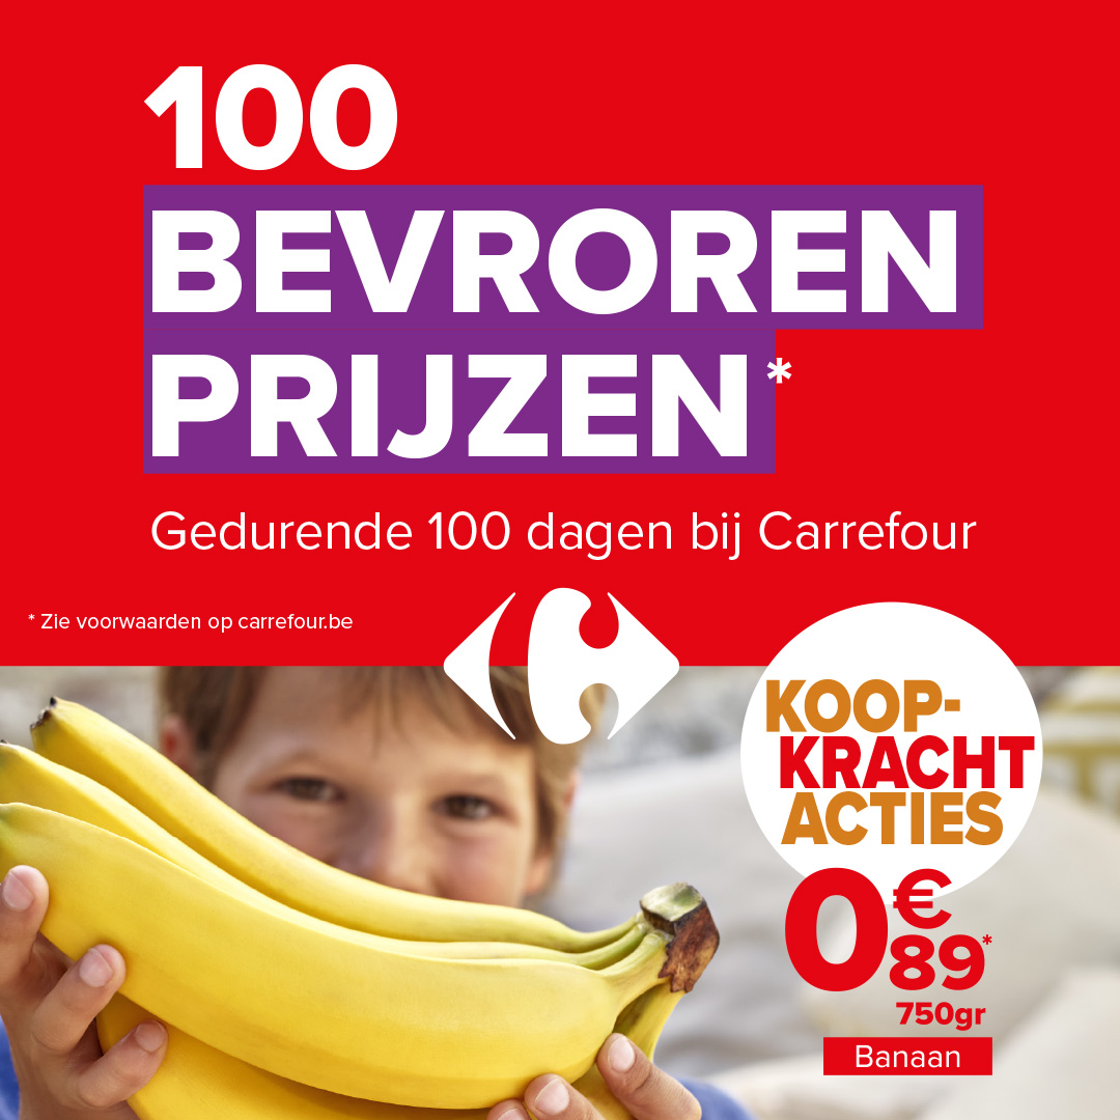 Carrefour België bevriest de prijzen van 100 producten gedurende 100 dagen: een nieuwe actie om de koopkracht van haar klanten te versterken